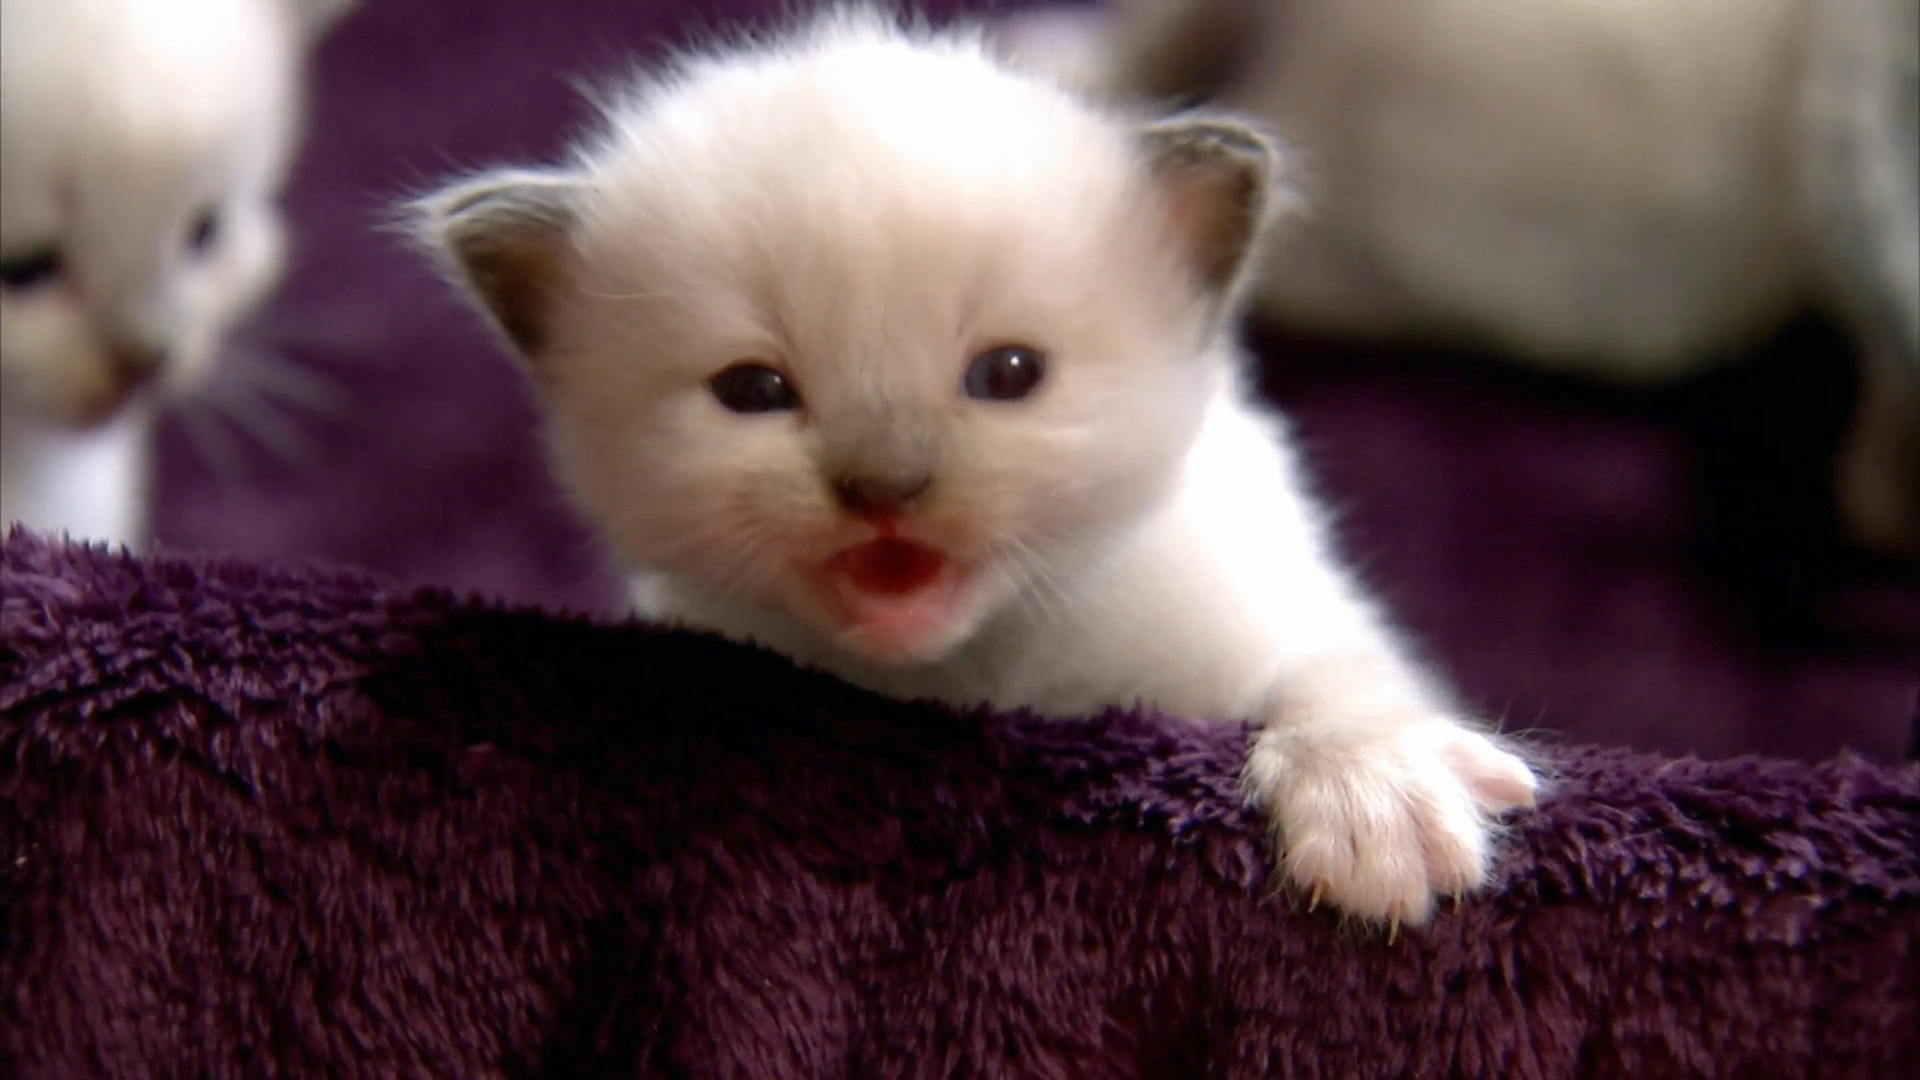 Too Cute! - S1 E5 Kitten Dolls - Animal Planet GO